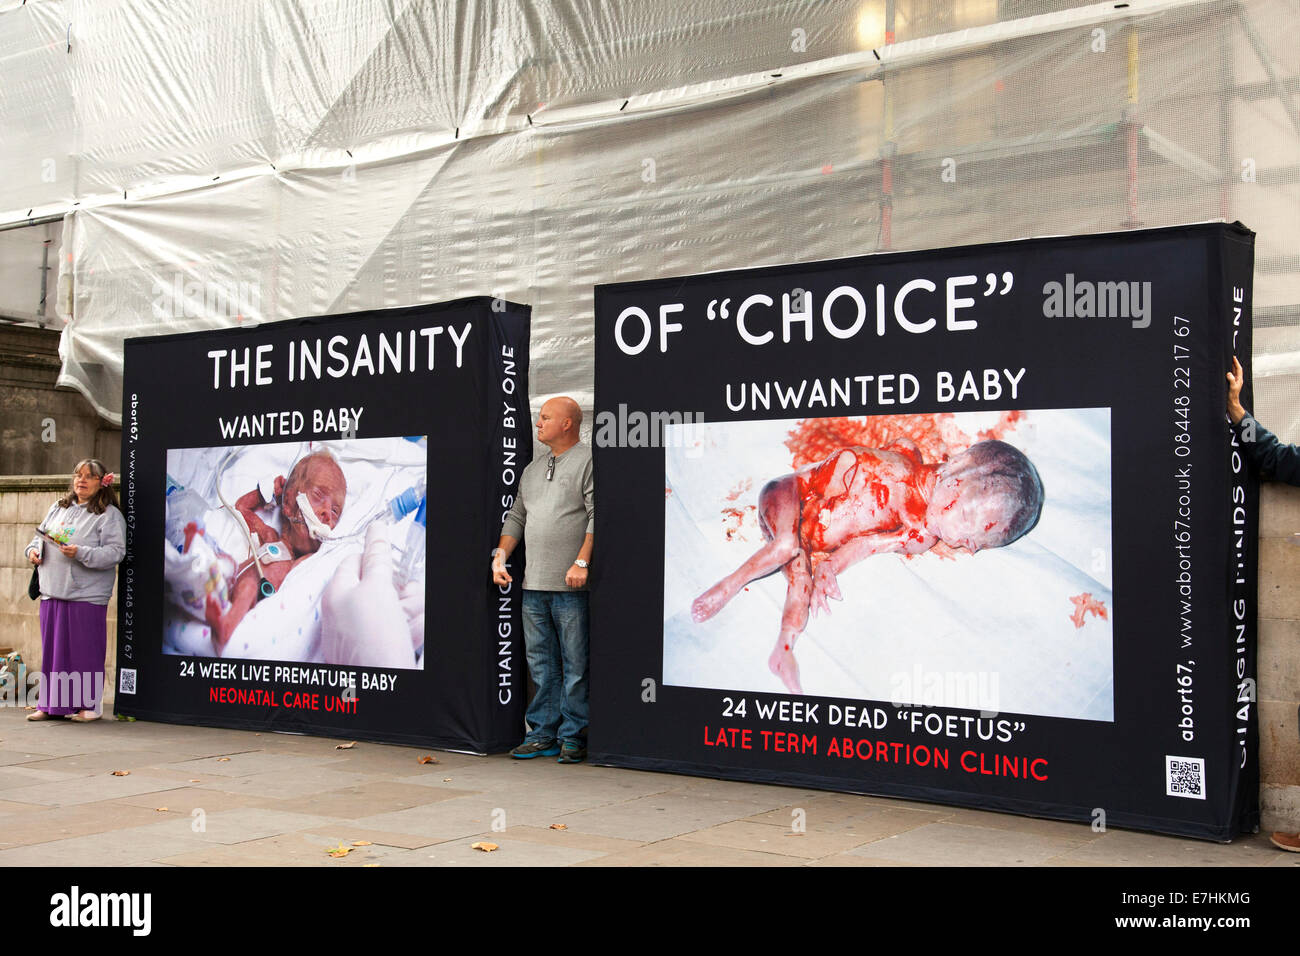 Ein Abort67 Bewusstsein Abtreibungskampagne außerhalb des Gesundheitsministeriums in Whitehall, Westminster, London, Vereinigtes Königreich Stockfoto